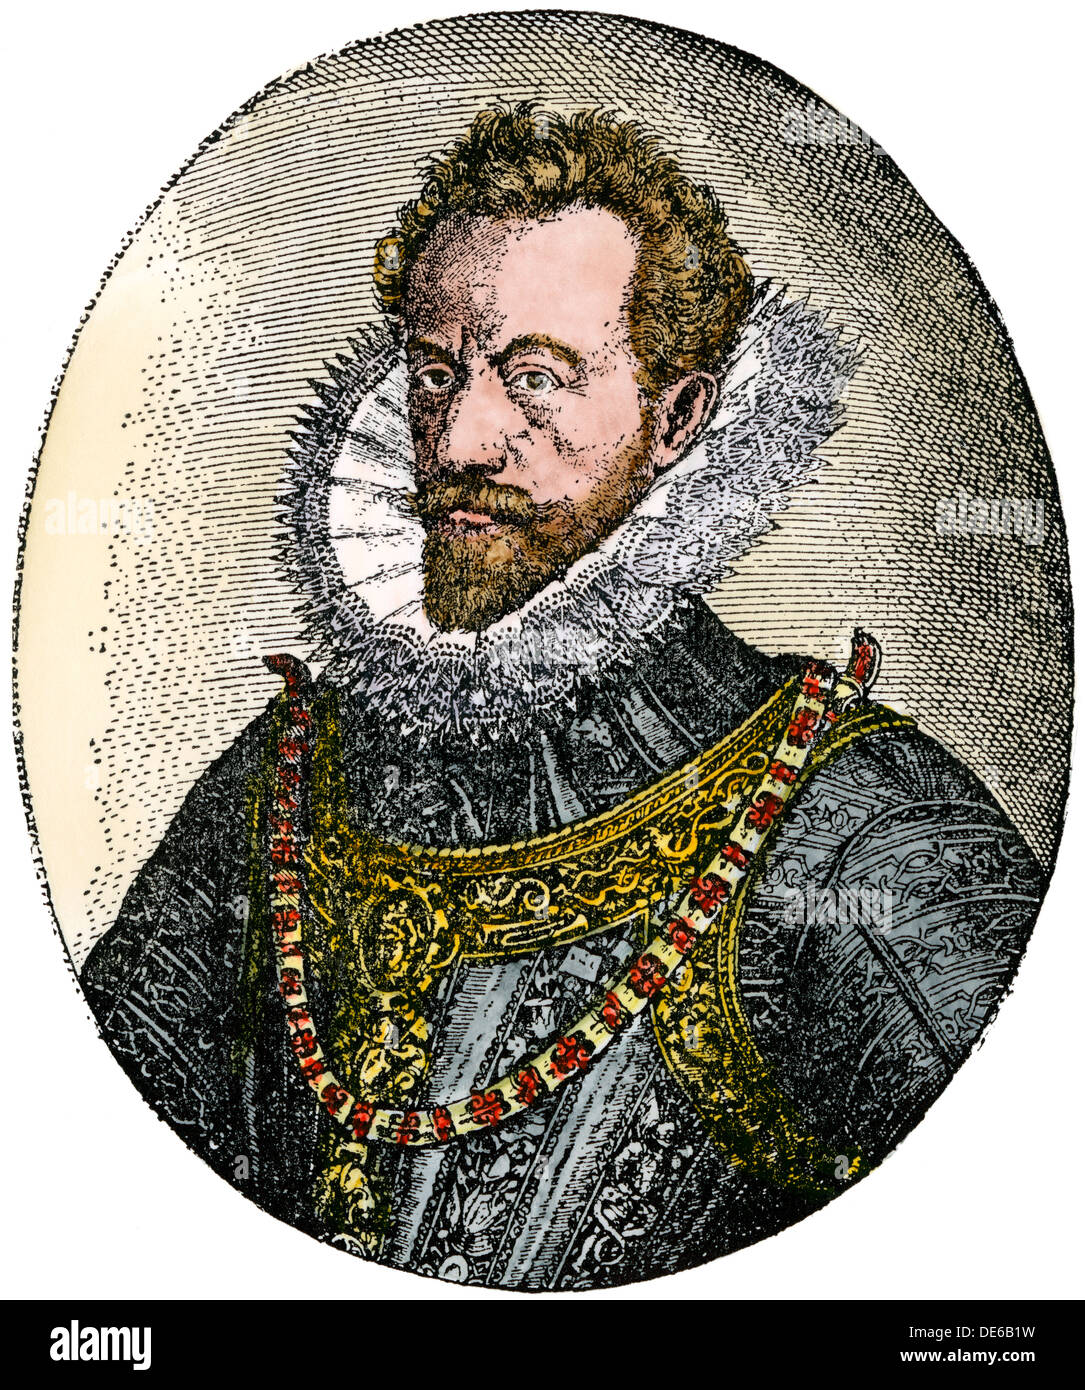 Alexandre Farnèse, duc de Parme, gouverneur espagnol général des Pays-Bas. À la main, gravure sur bois Banque D'Images